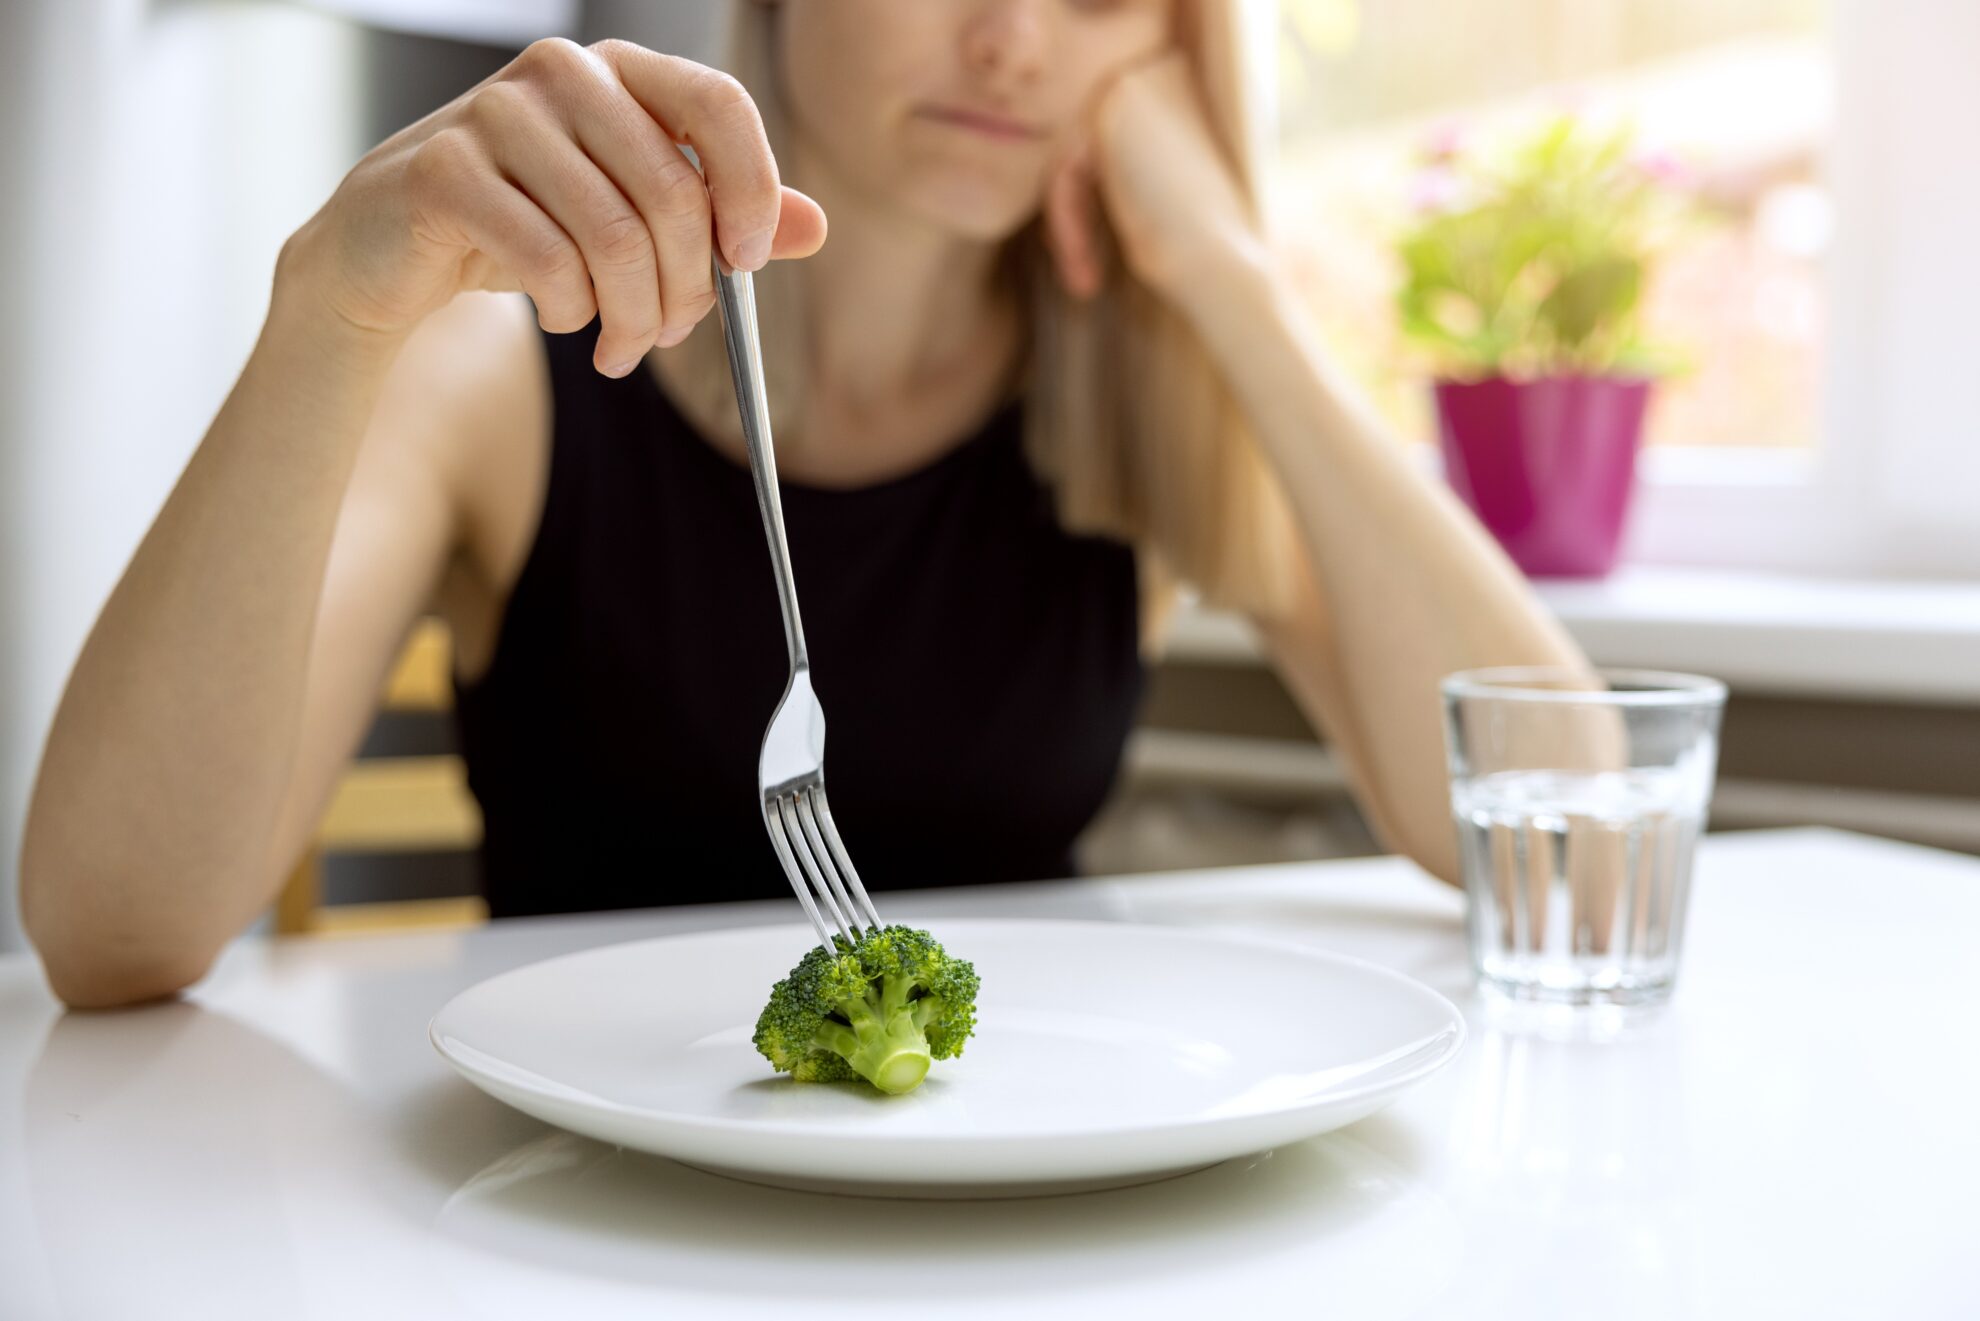 Get help understanding eating disorders